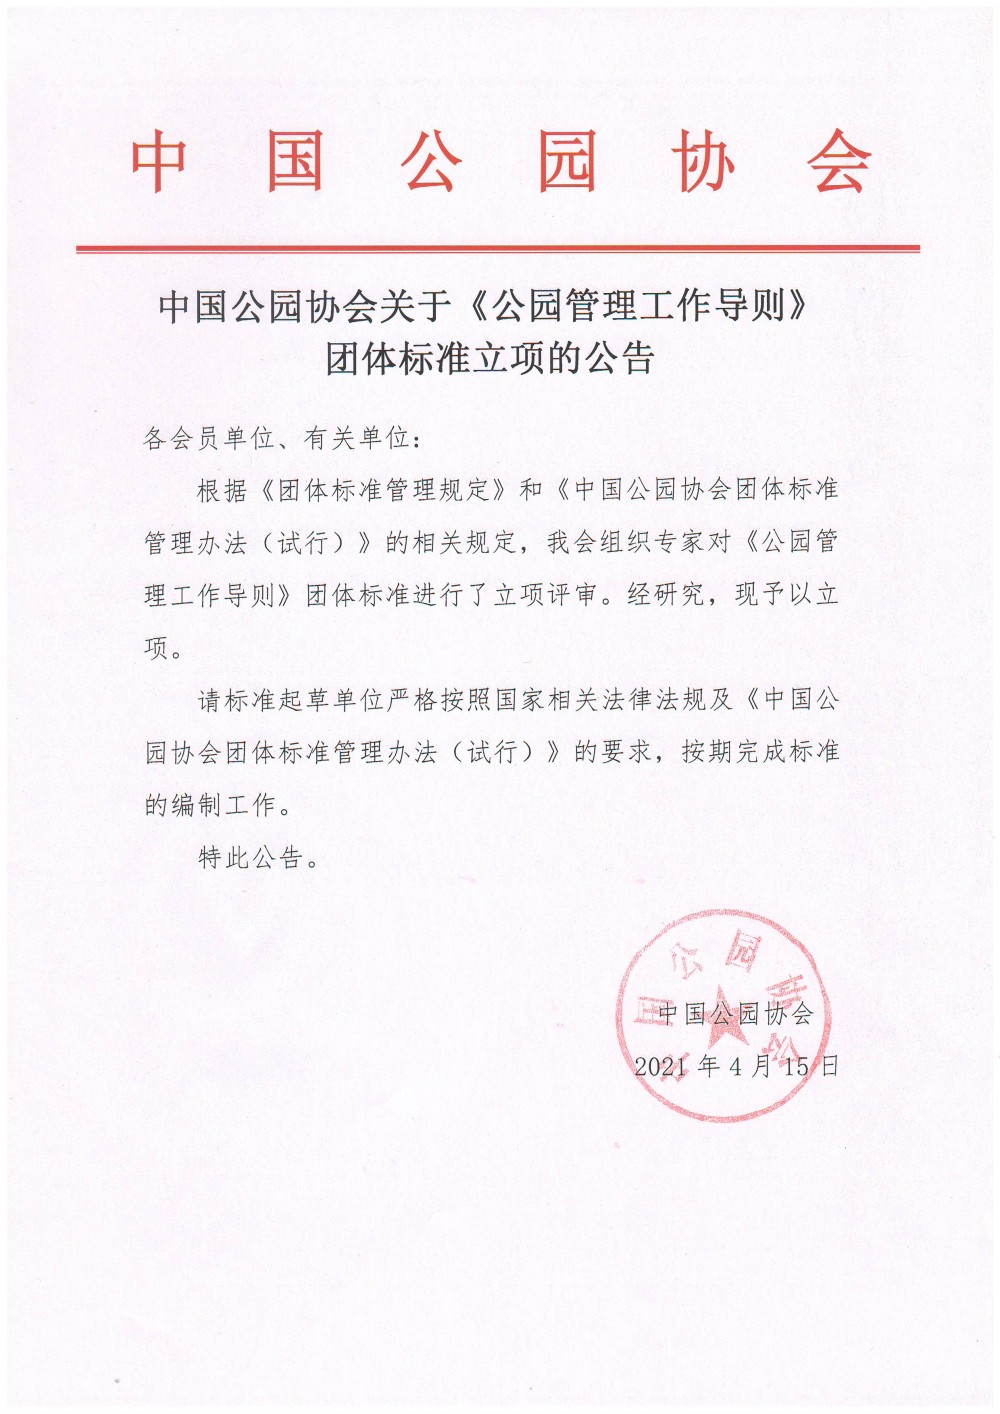 中国公园协会关于《公园管理工作导则》团体标准立项的公告